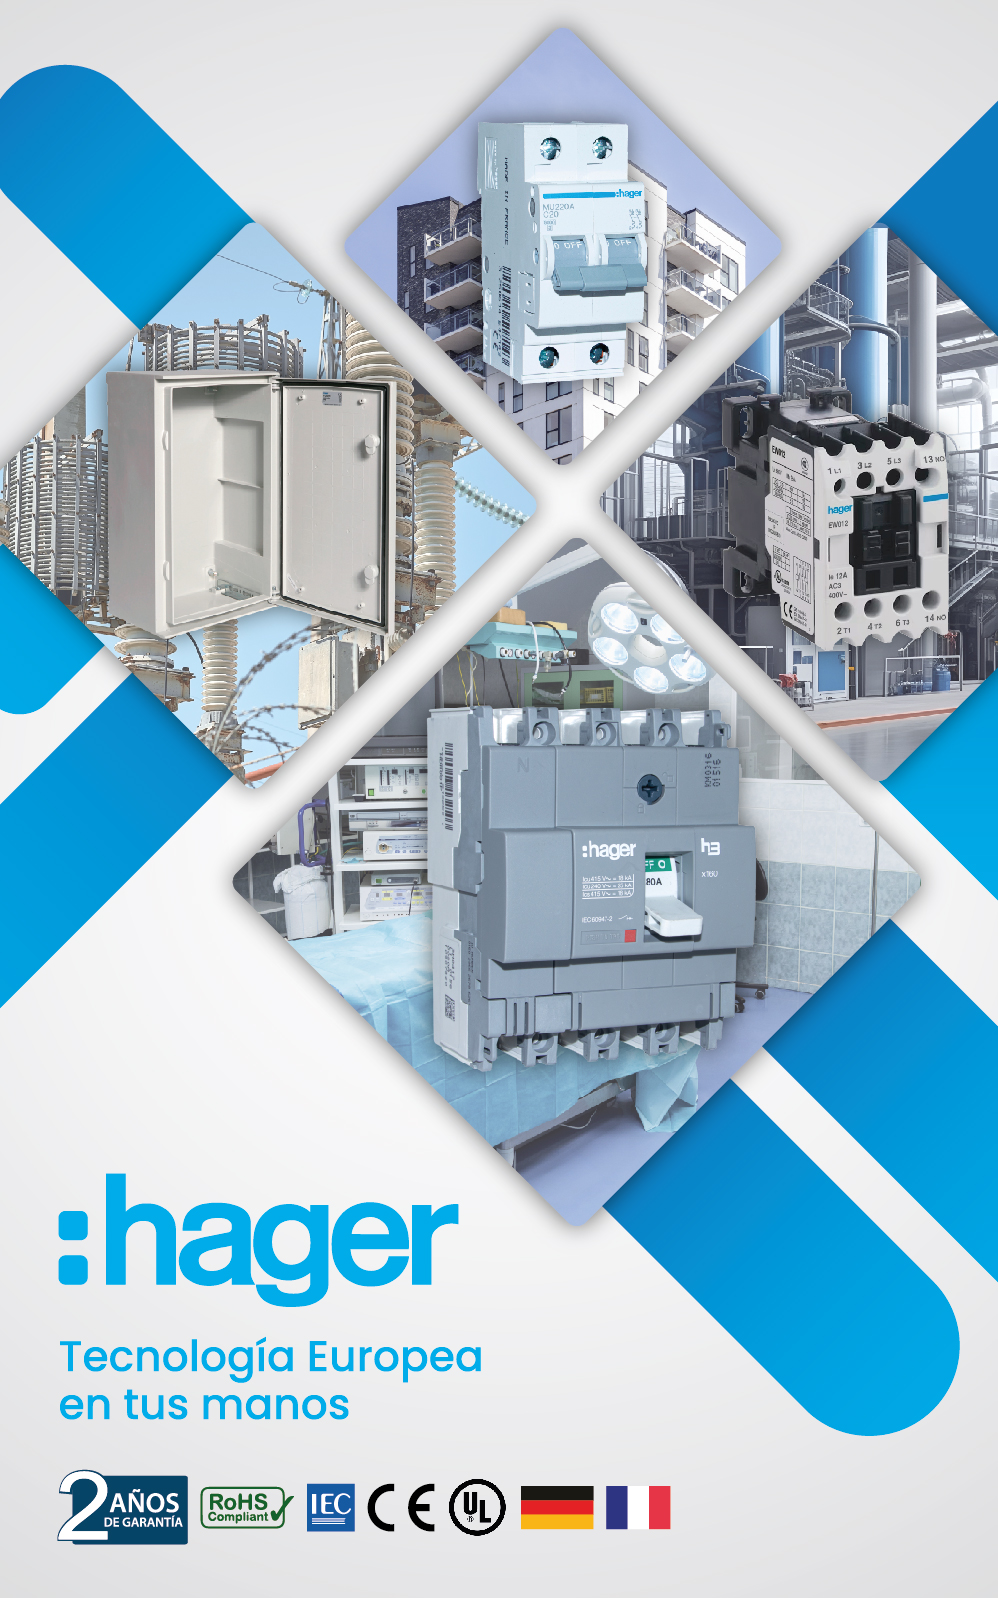 Catálogo Hager: Soluciones en Distribución de Energía